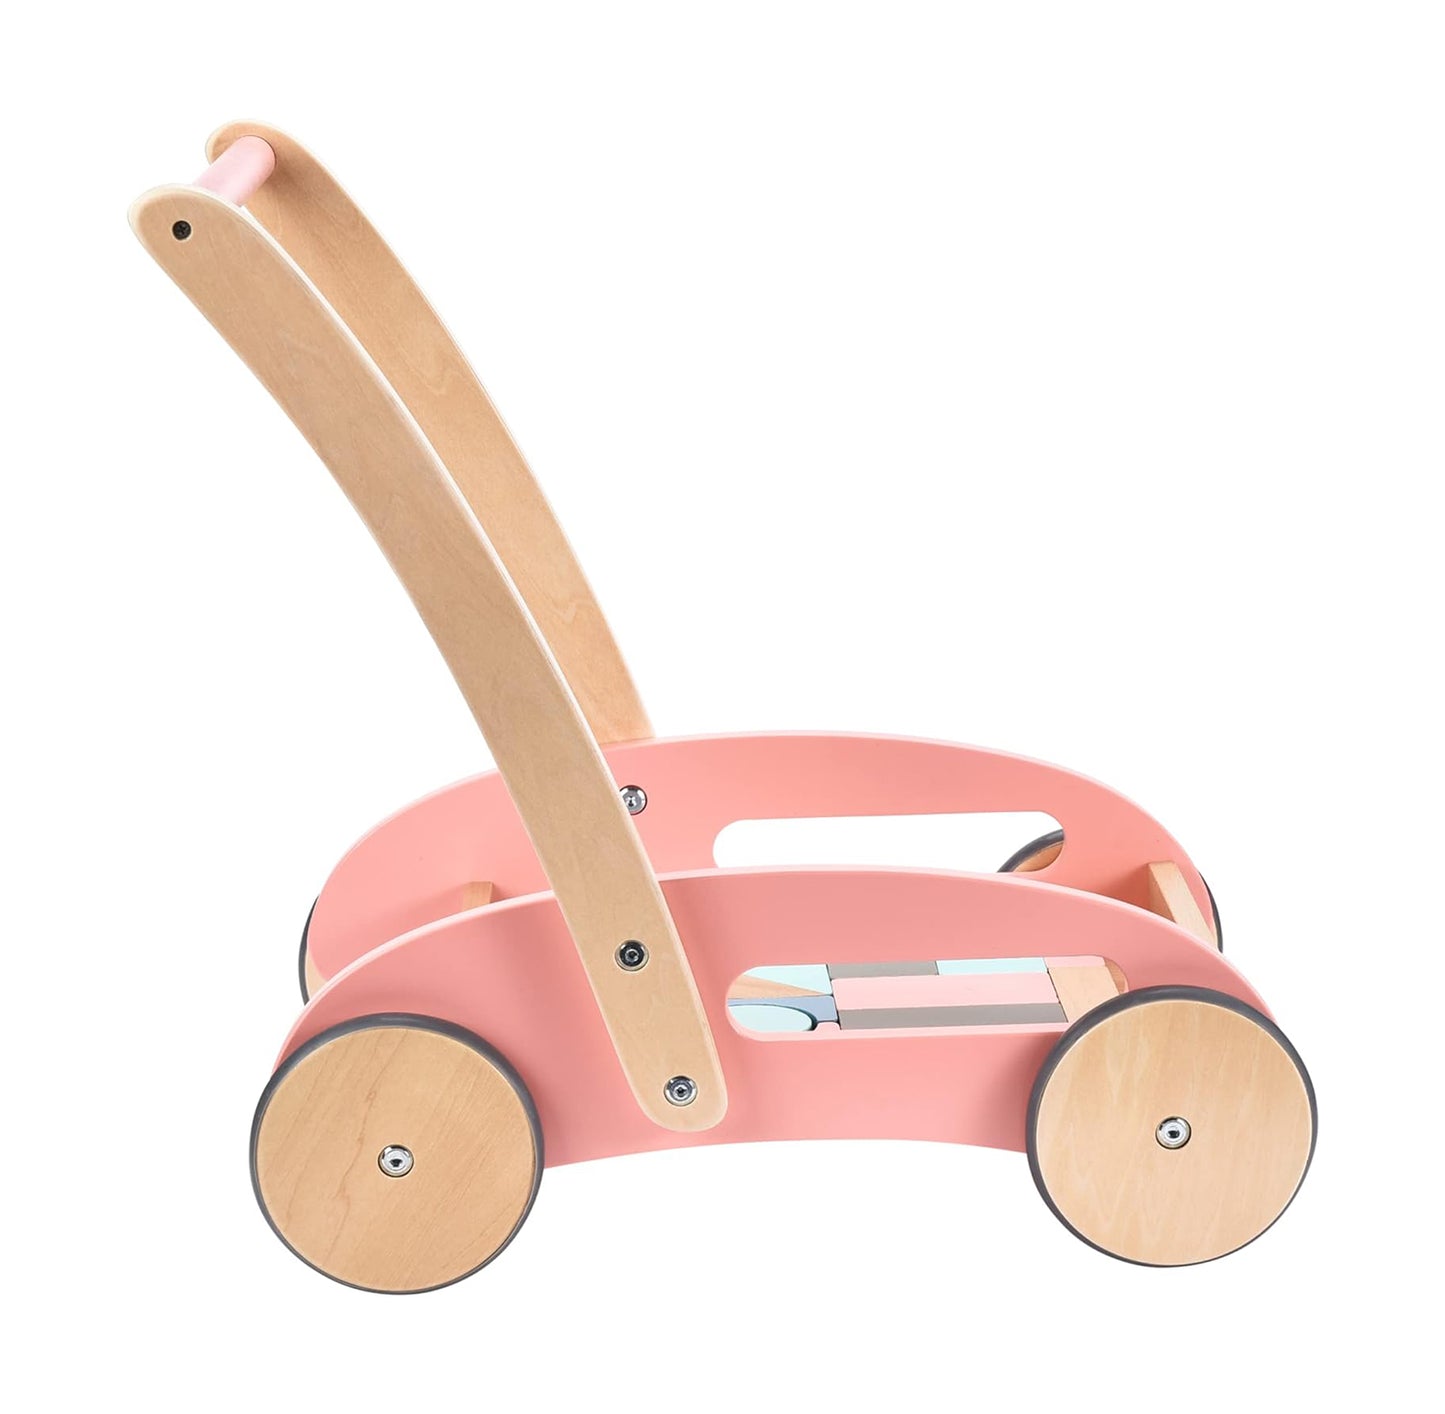 Child Behavior Premium Wooden Baby Push Walker with Wheels